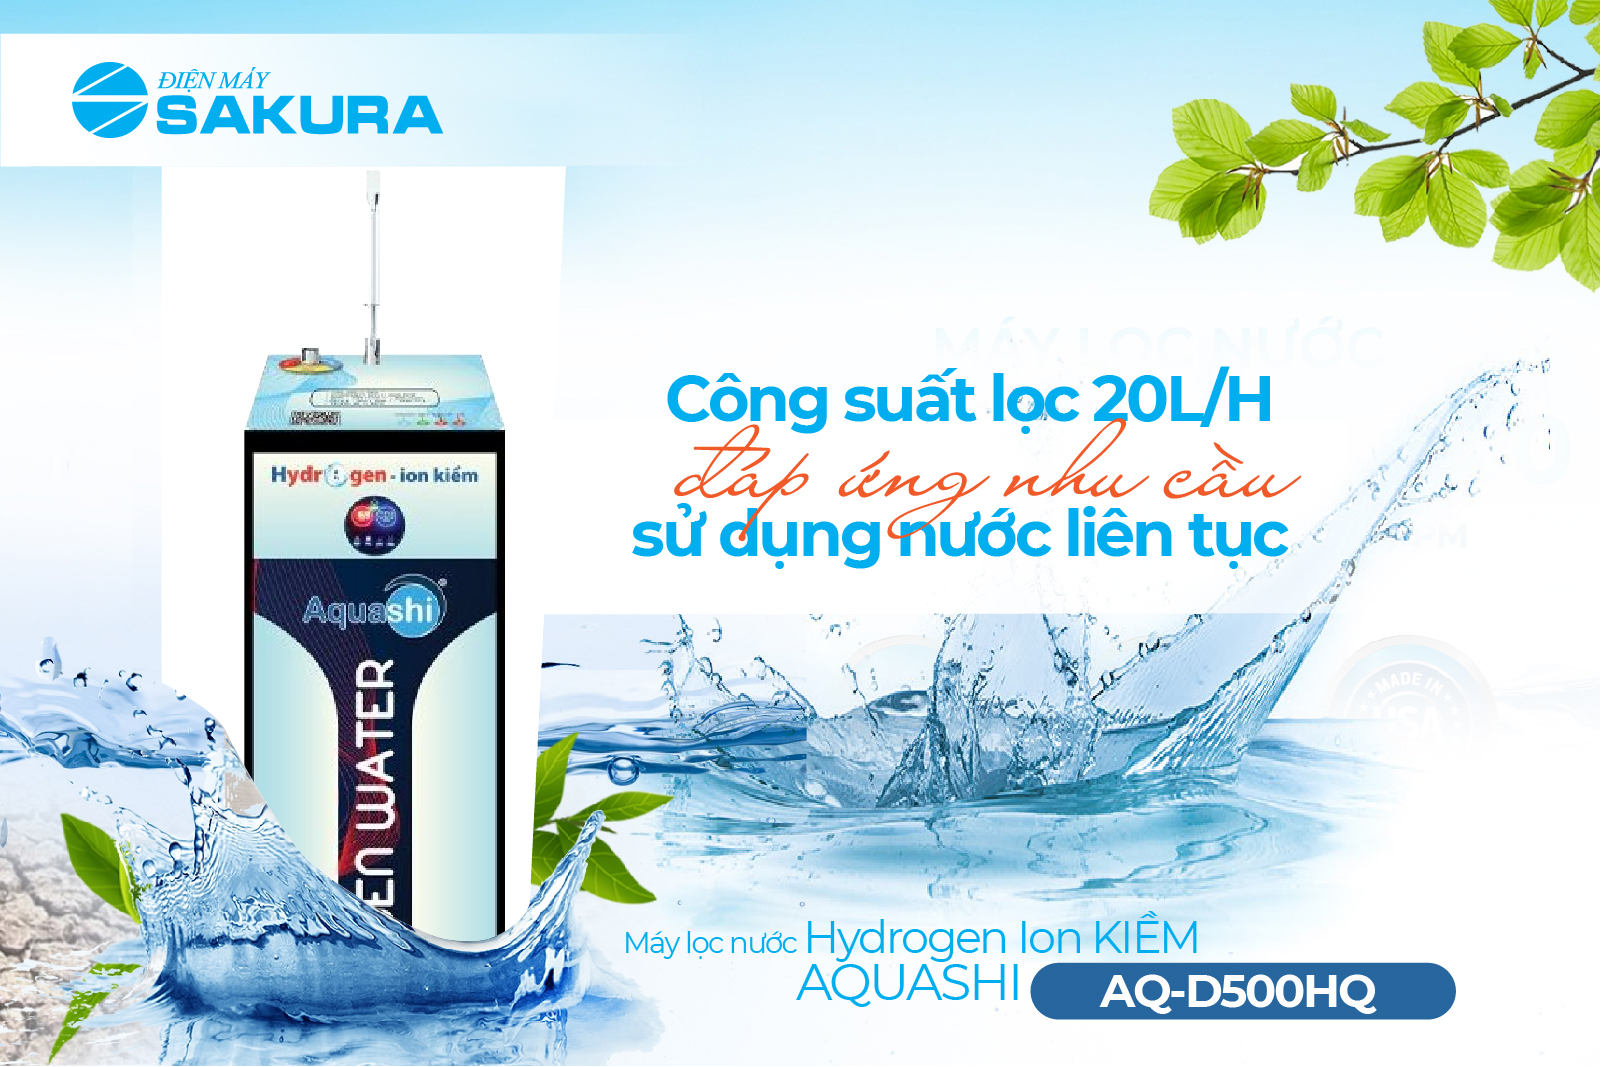 máy lọc nước Hydrogen ion kiềm Aquashi AQ-D500HQ công suất lọc nước lớn lên đến 20L/H